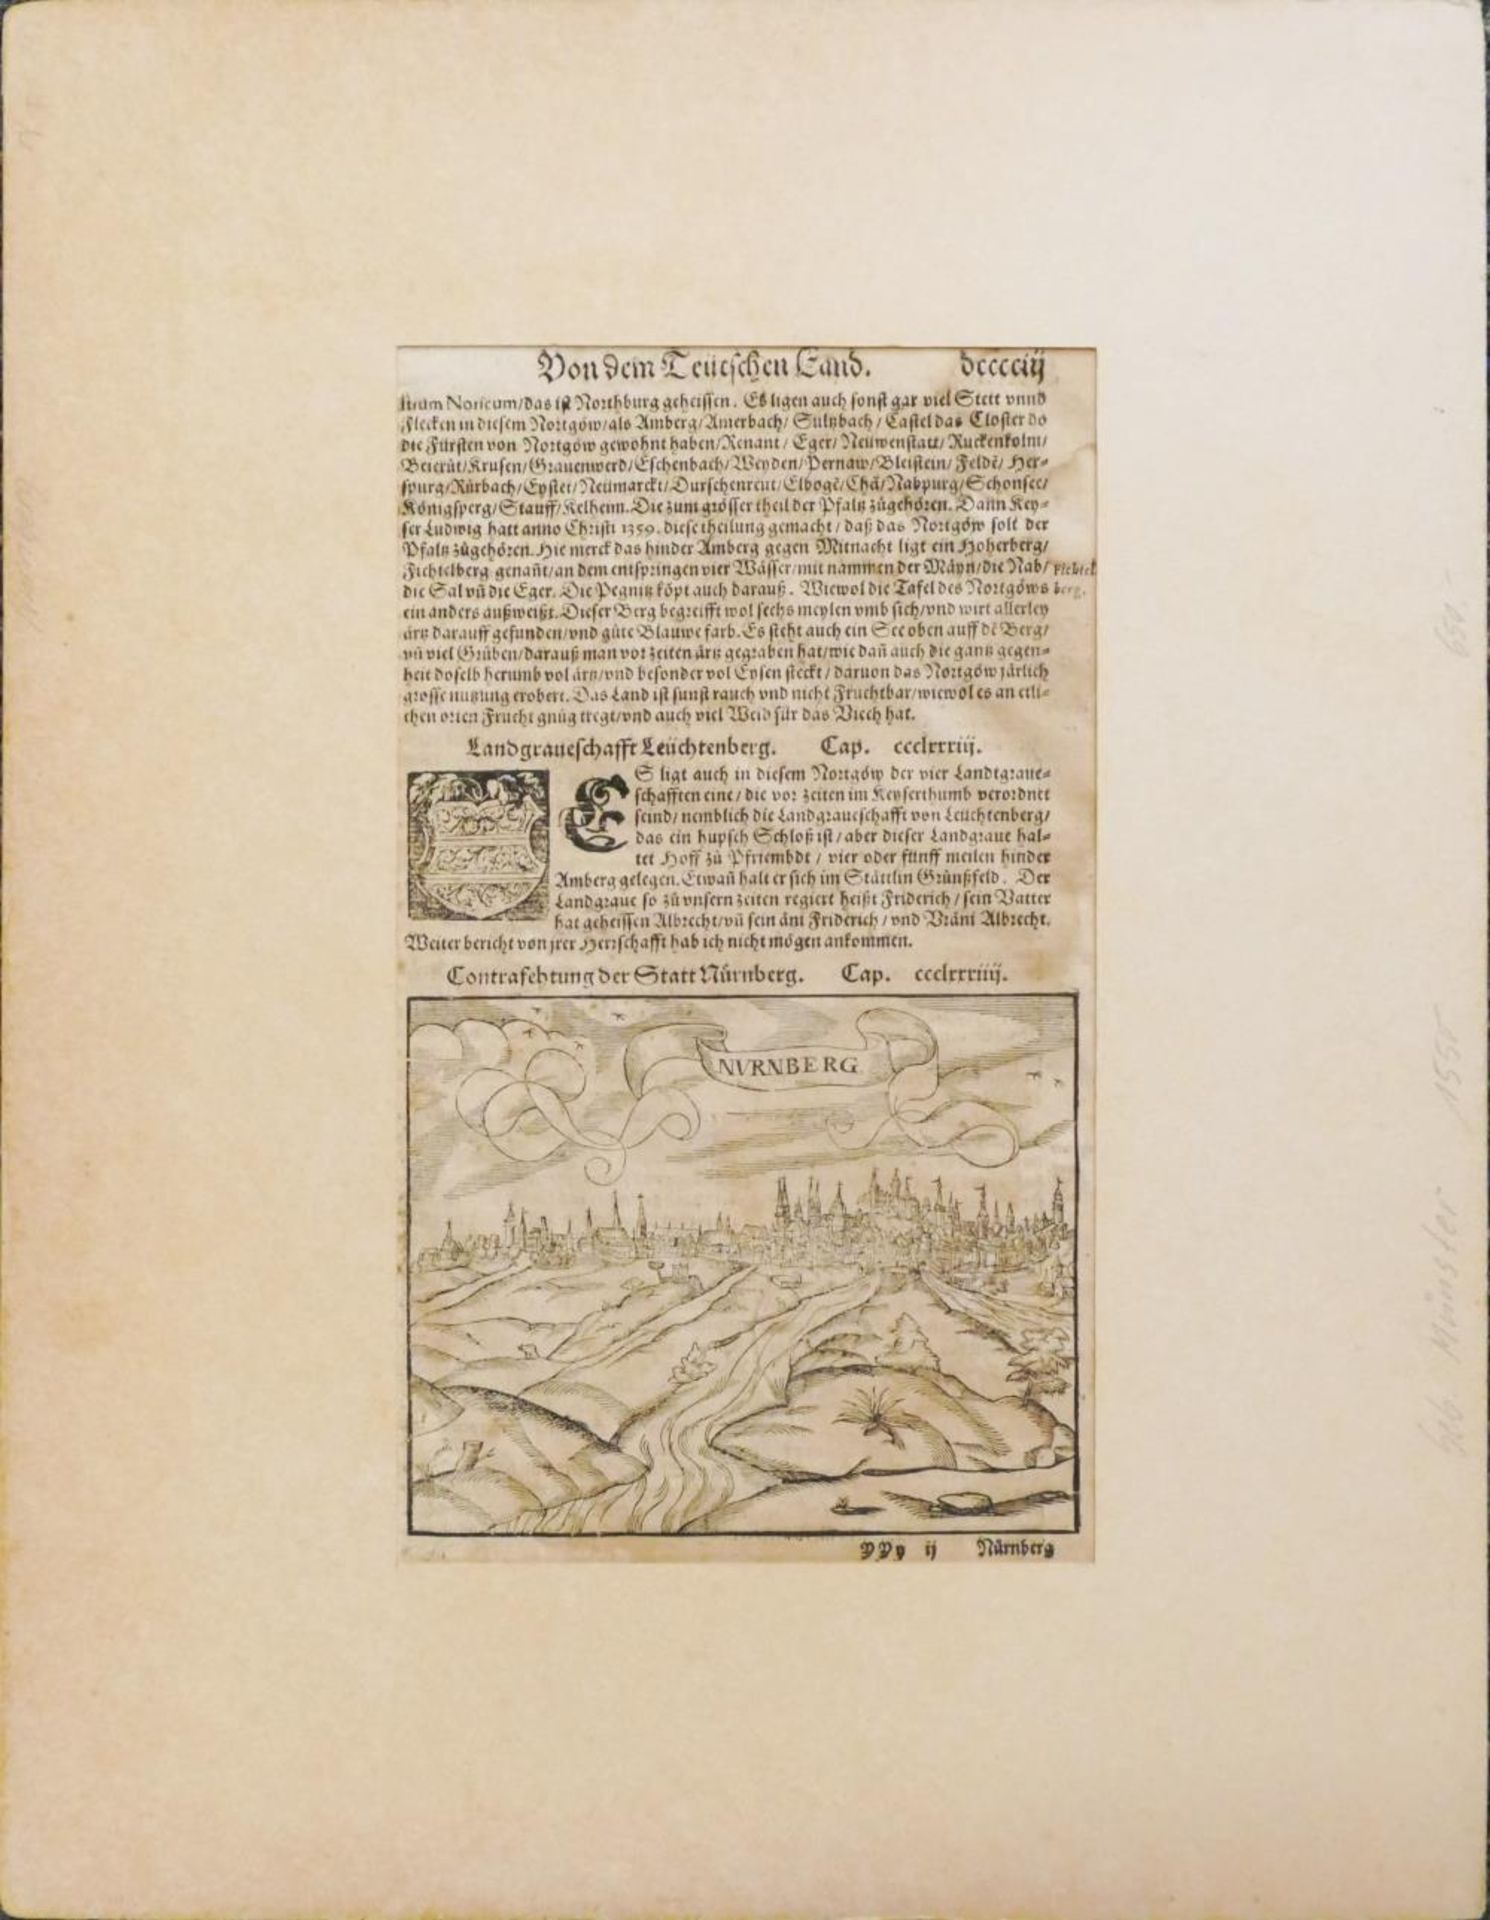 1 Holzschnitt/Buchseite wohl 16. Jh. "Ansicht von Nürnberg" aus: "Von dem Teutschen Land",